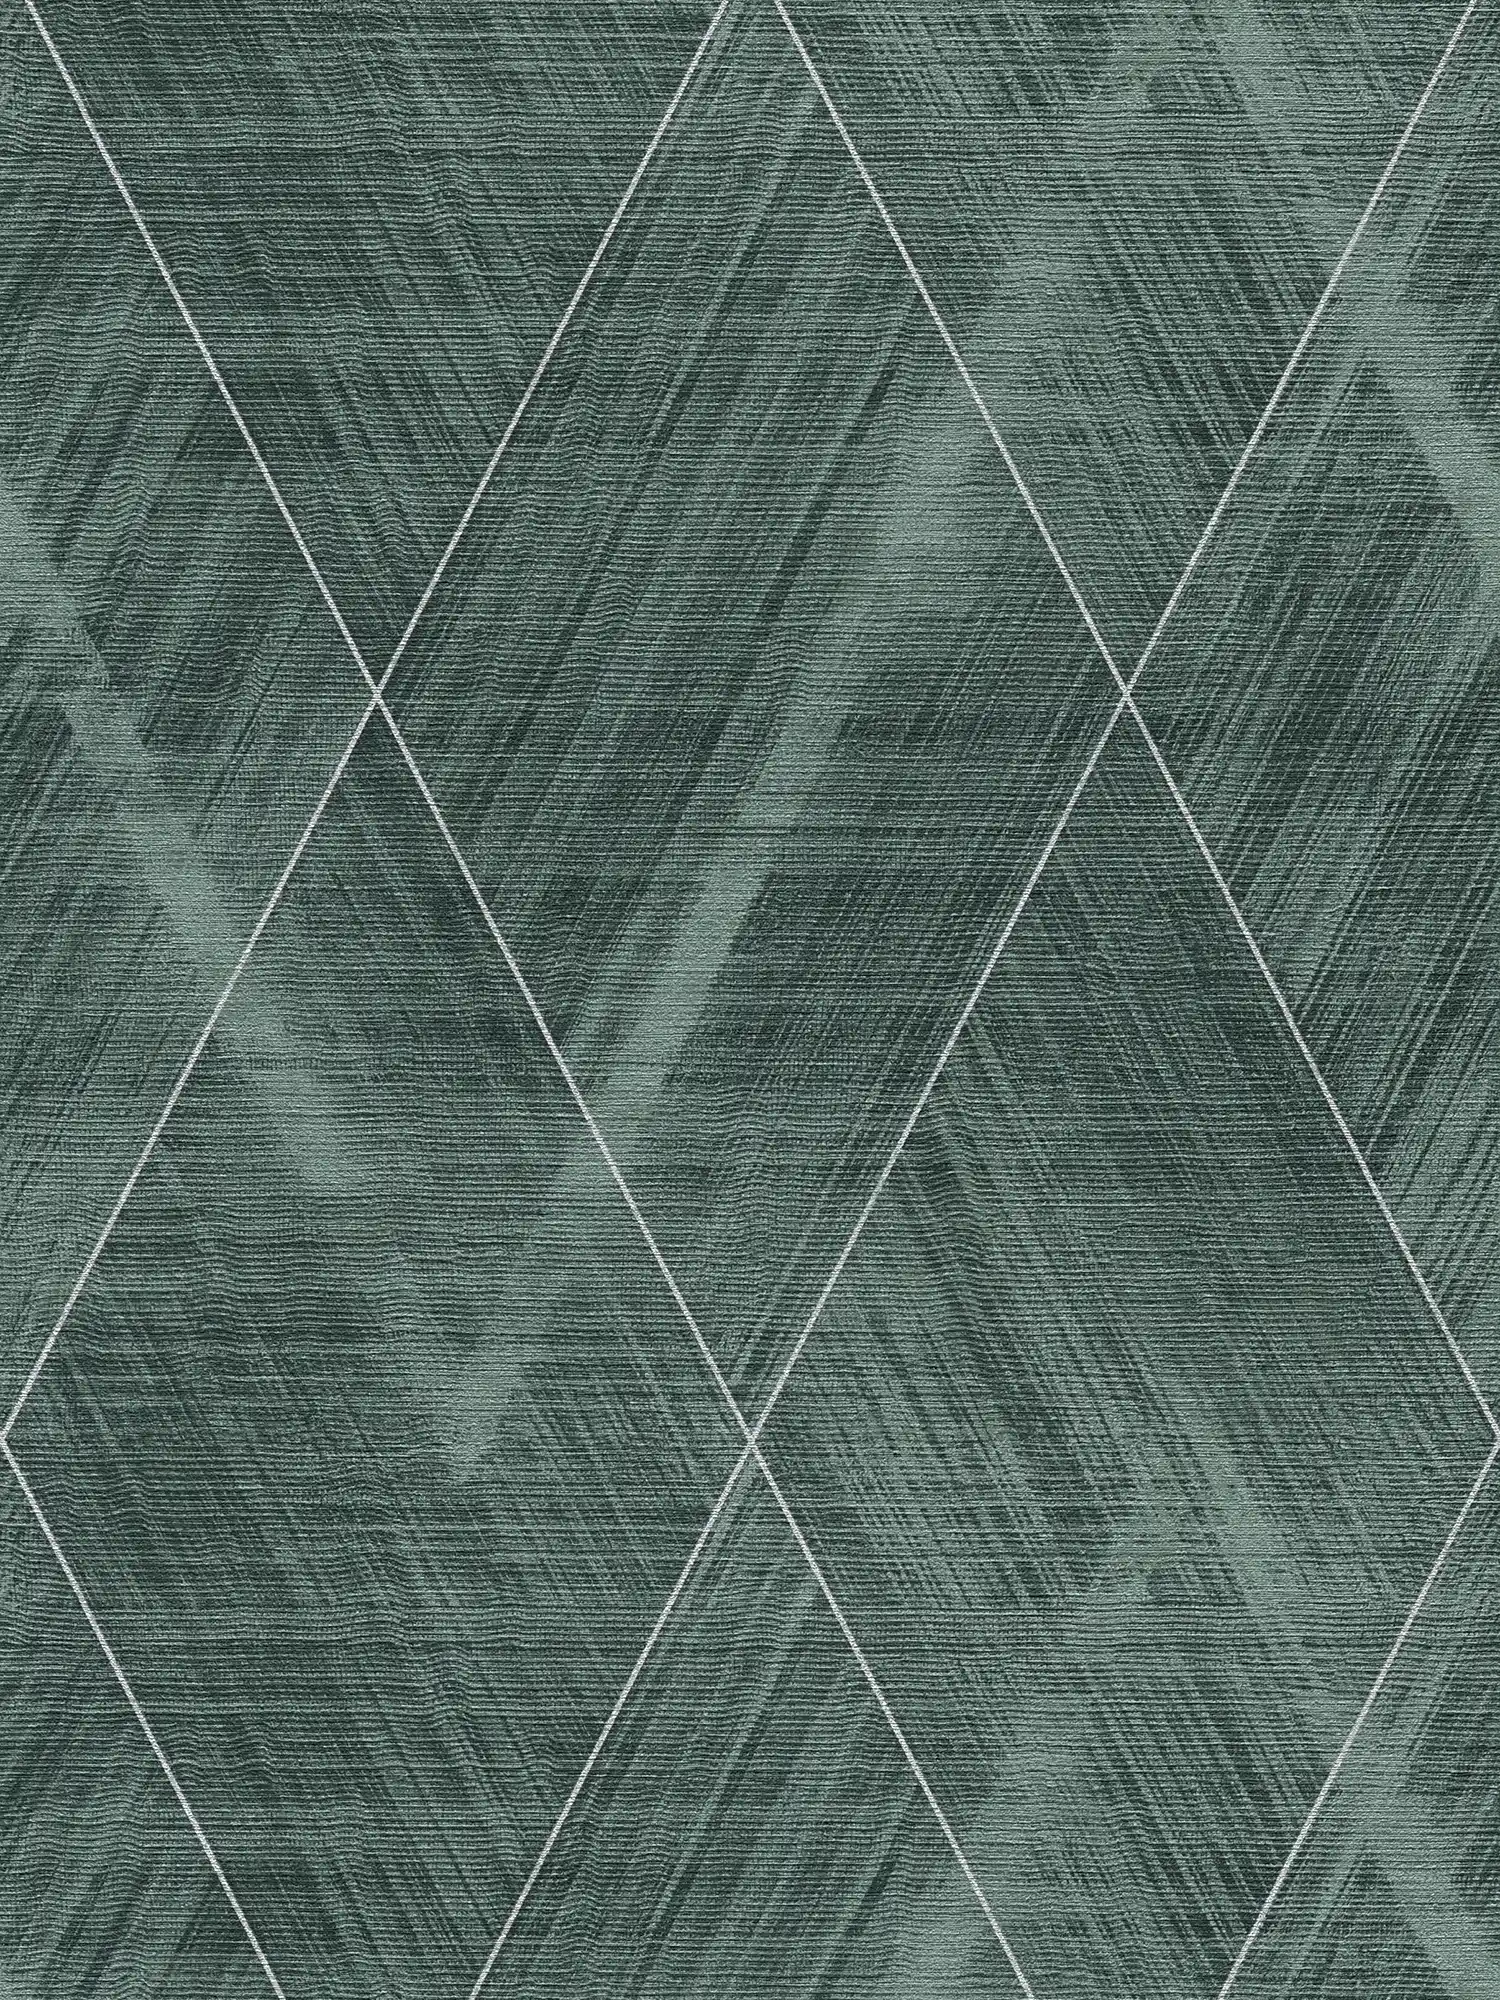         Diamantbehang met gevlekte textiellook - metallic, groen
    